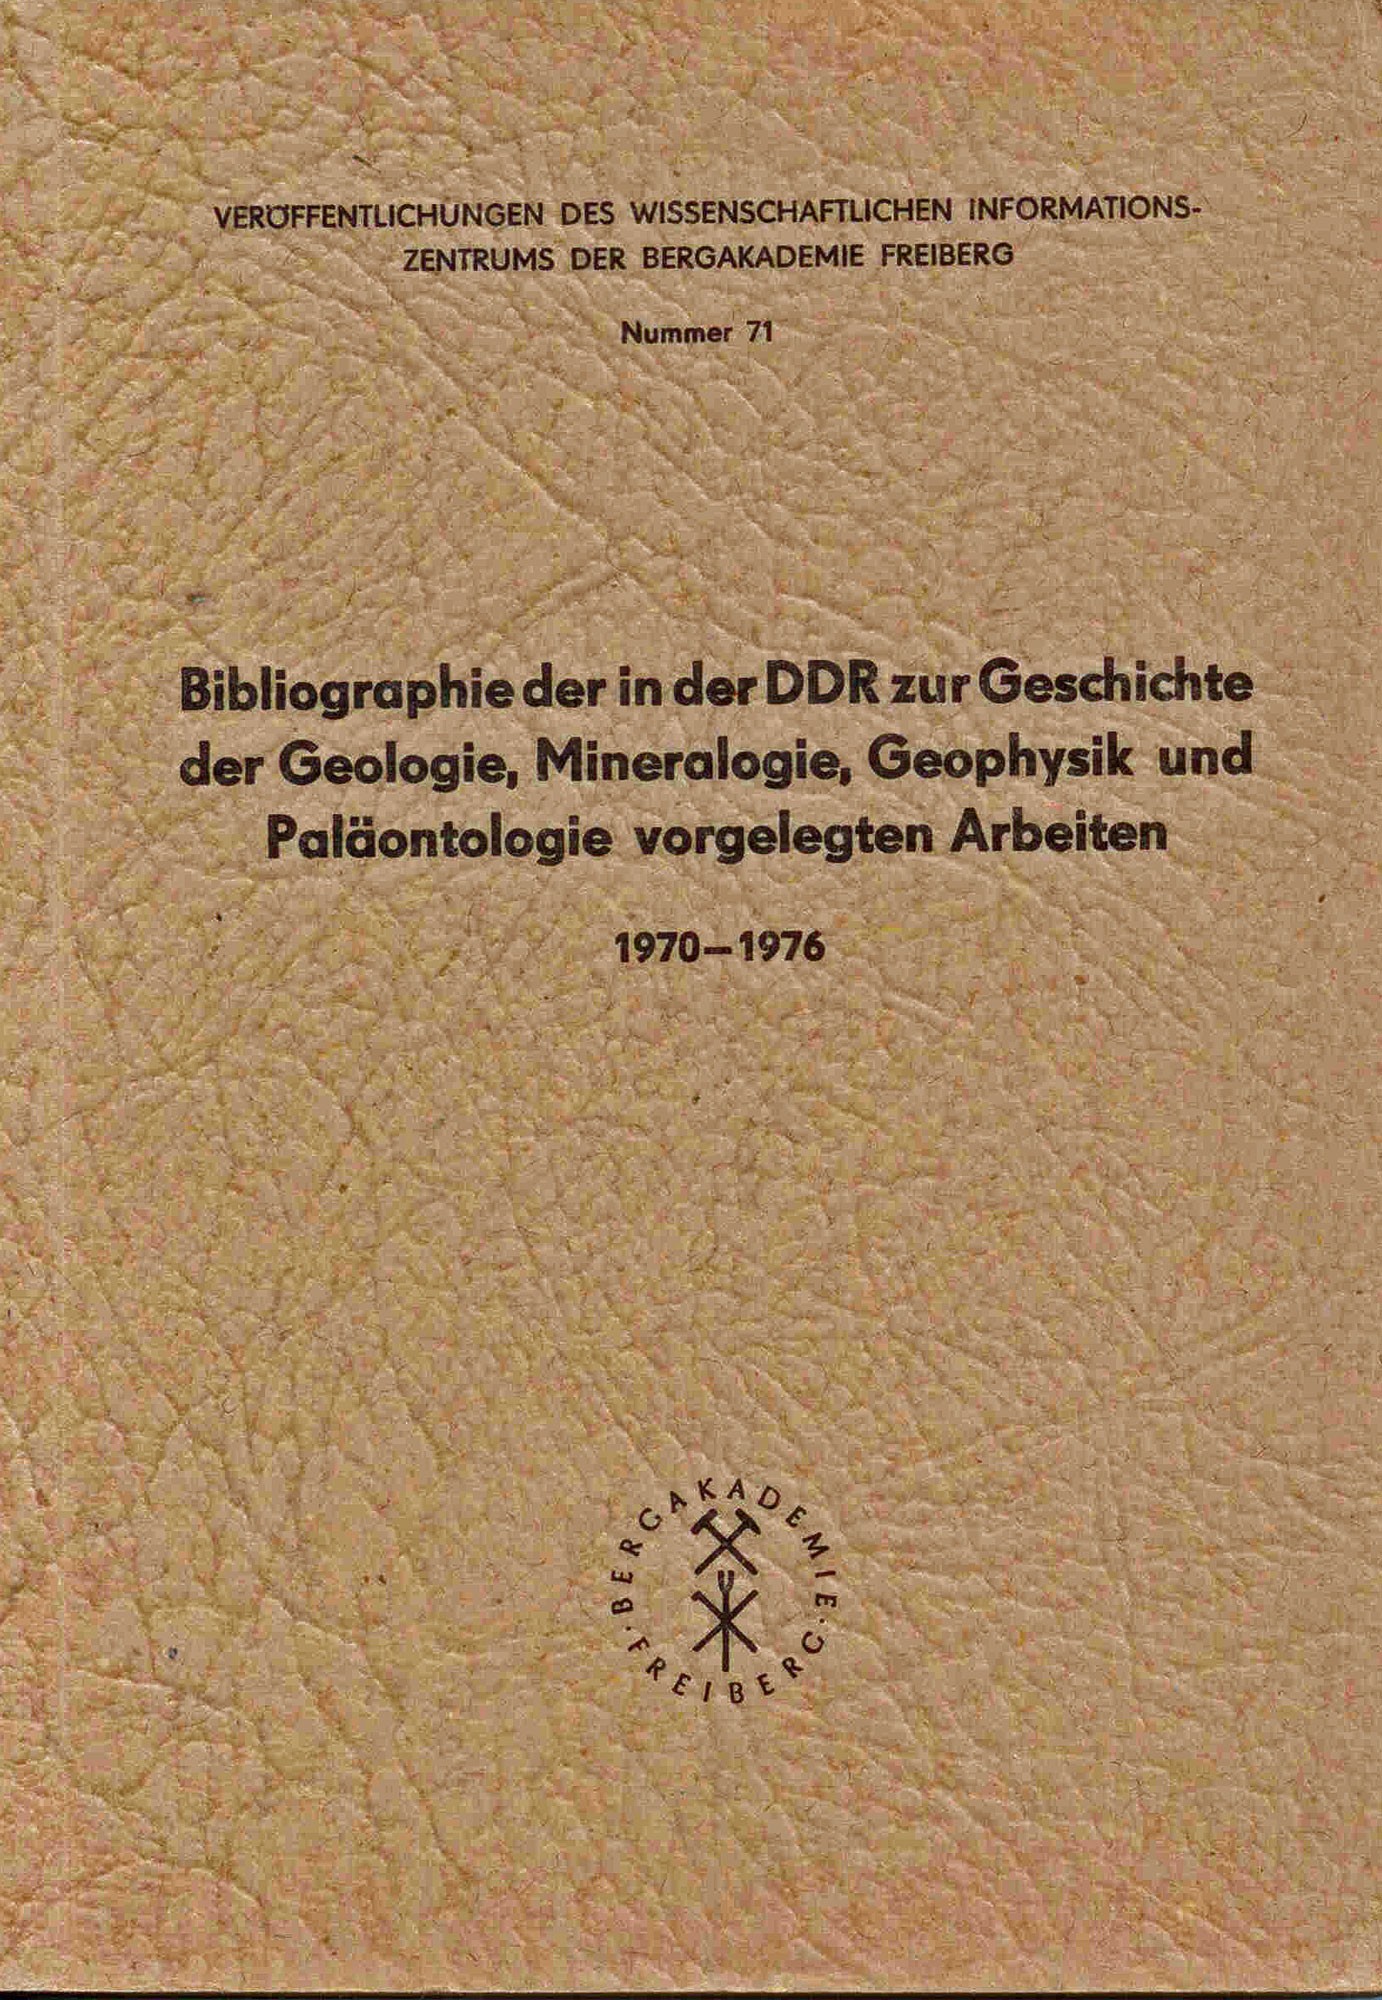 Schmidt, P.: Bibliographie der in der DDR zur Geschichte der Geologie, Mineralogie, Geophysik und Paläontologie vorgelegten Arbeiten 1970-1976 